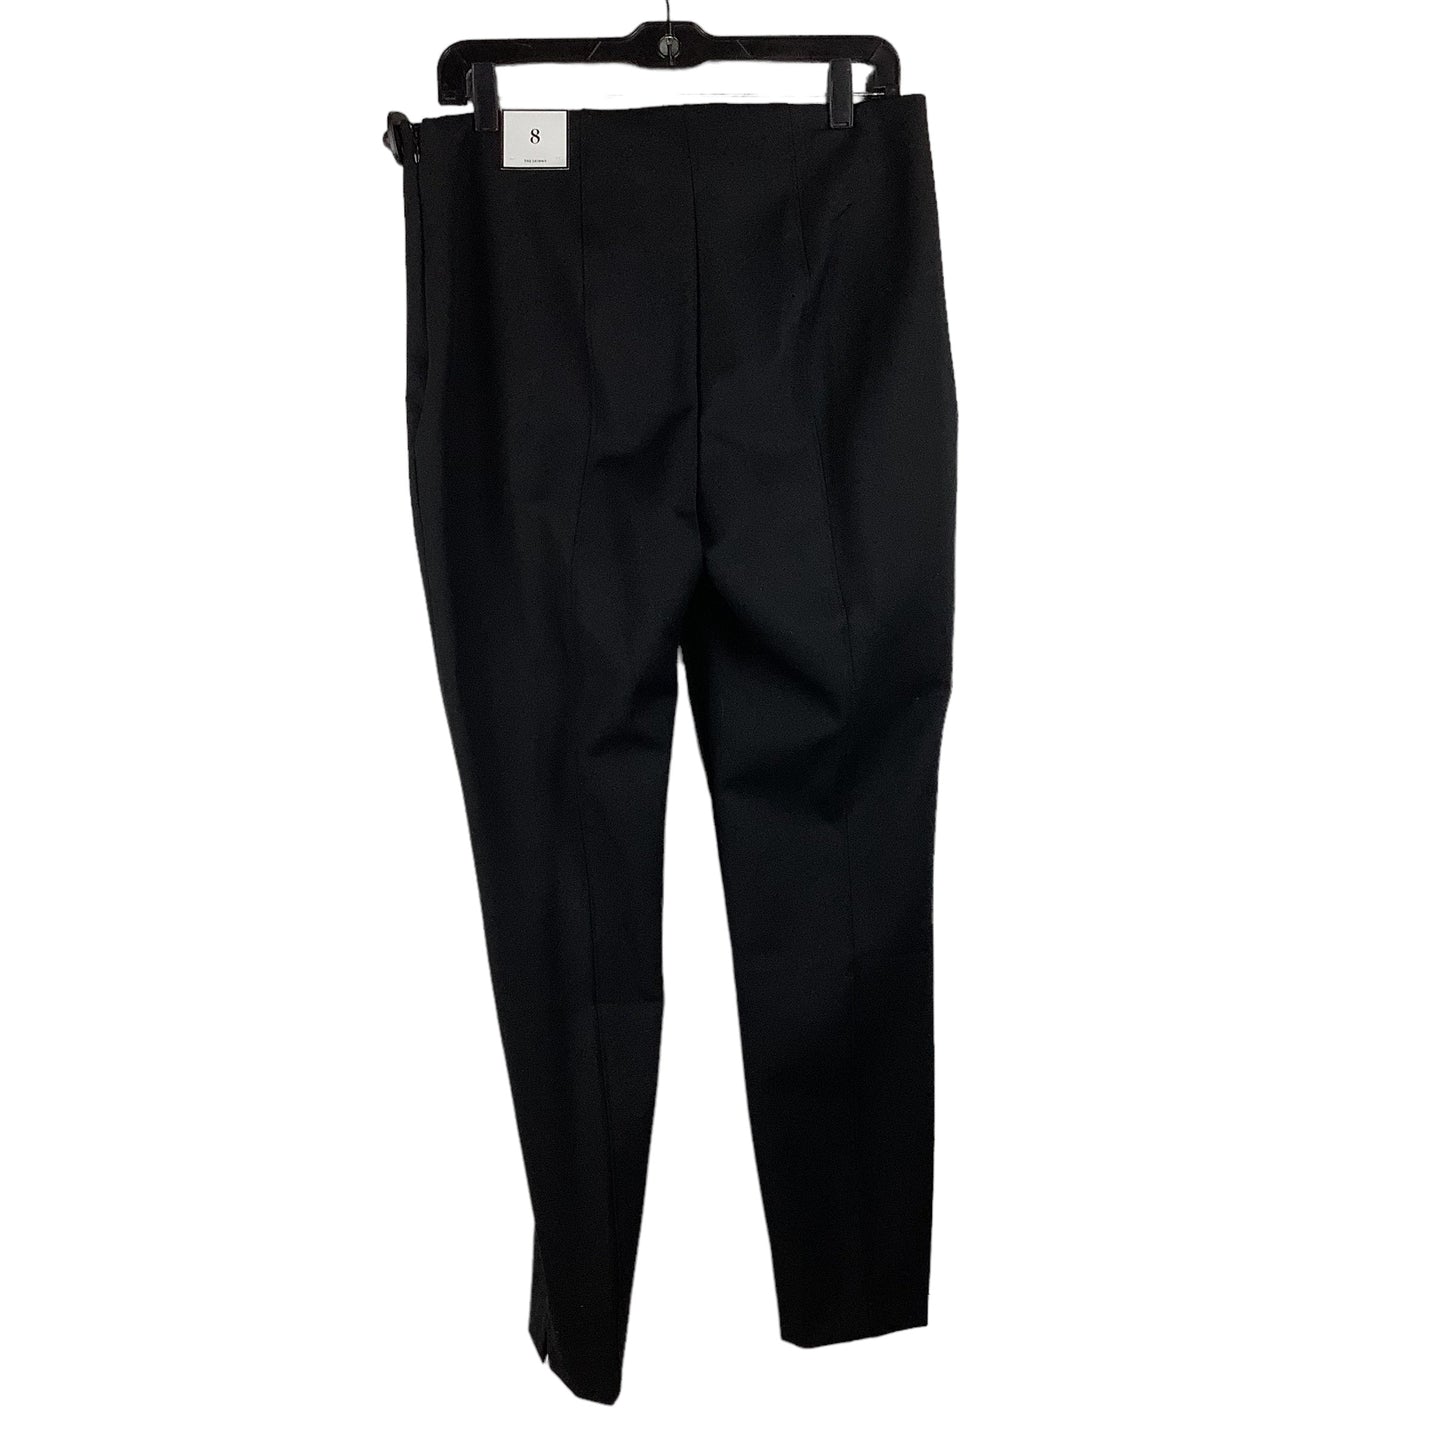 Black Pants Dress Clothes Mentor, Size 8